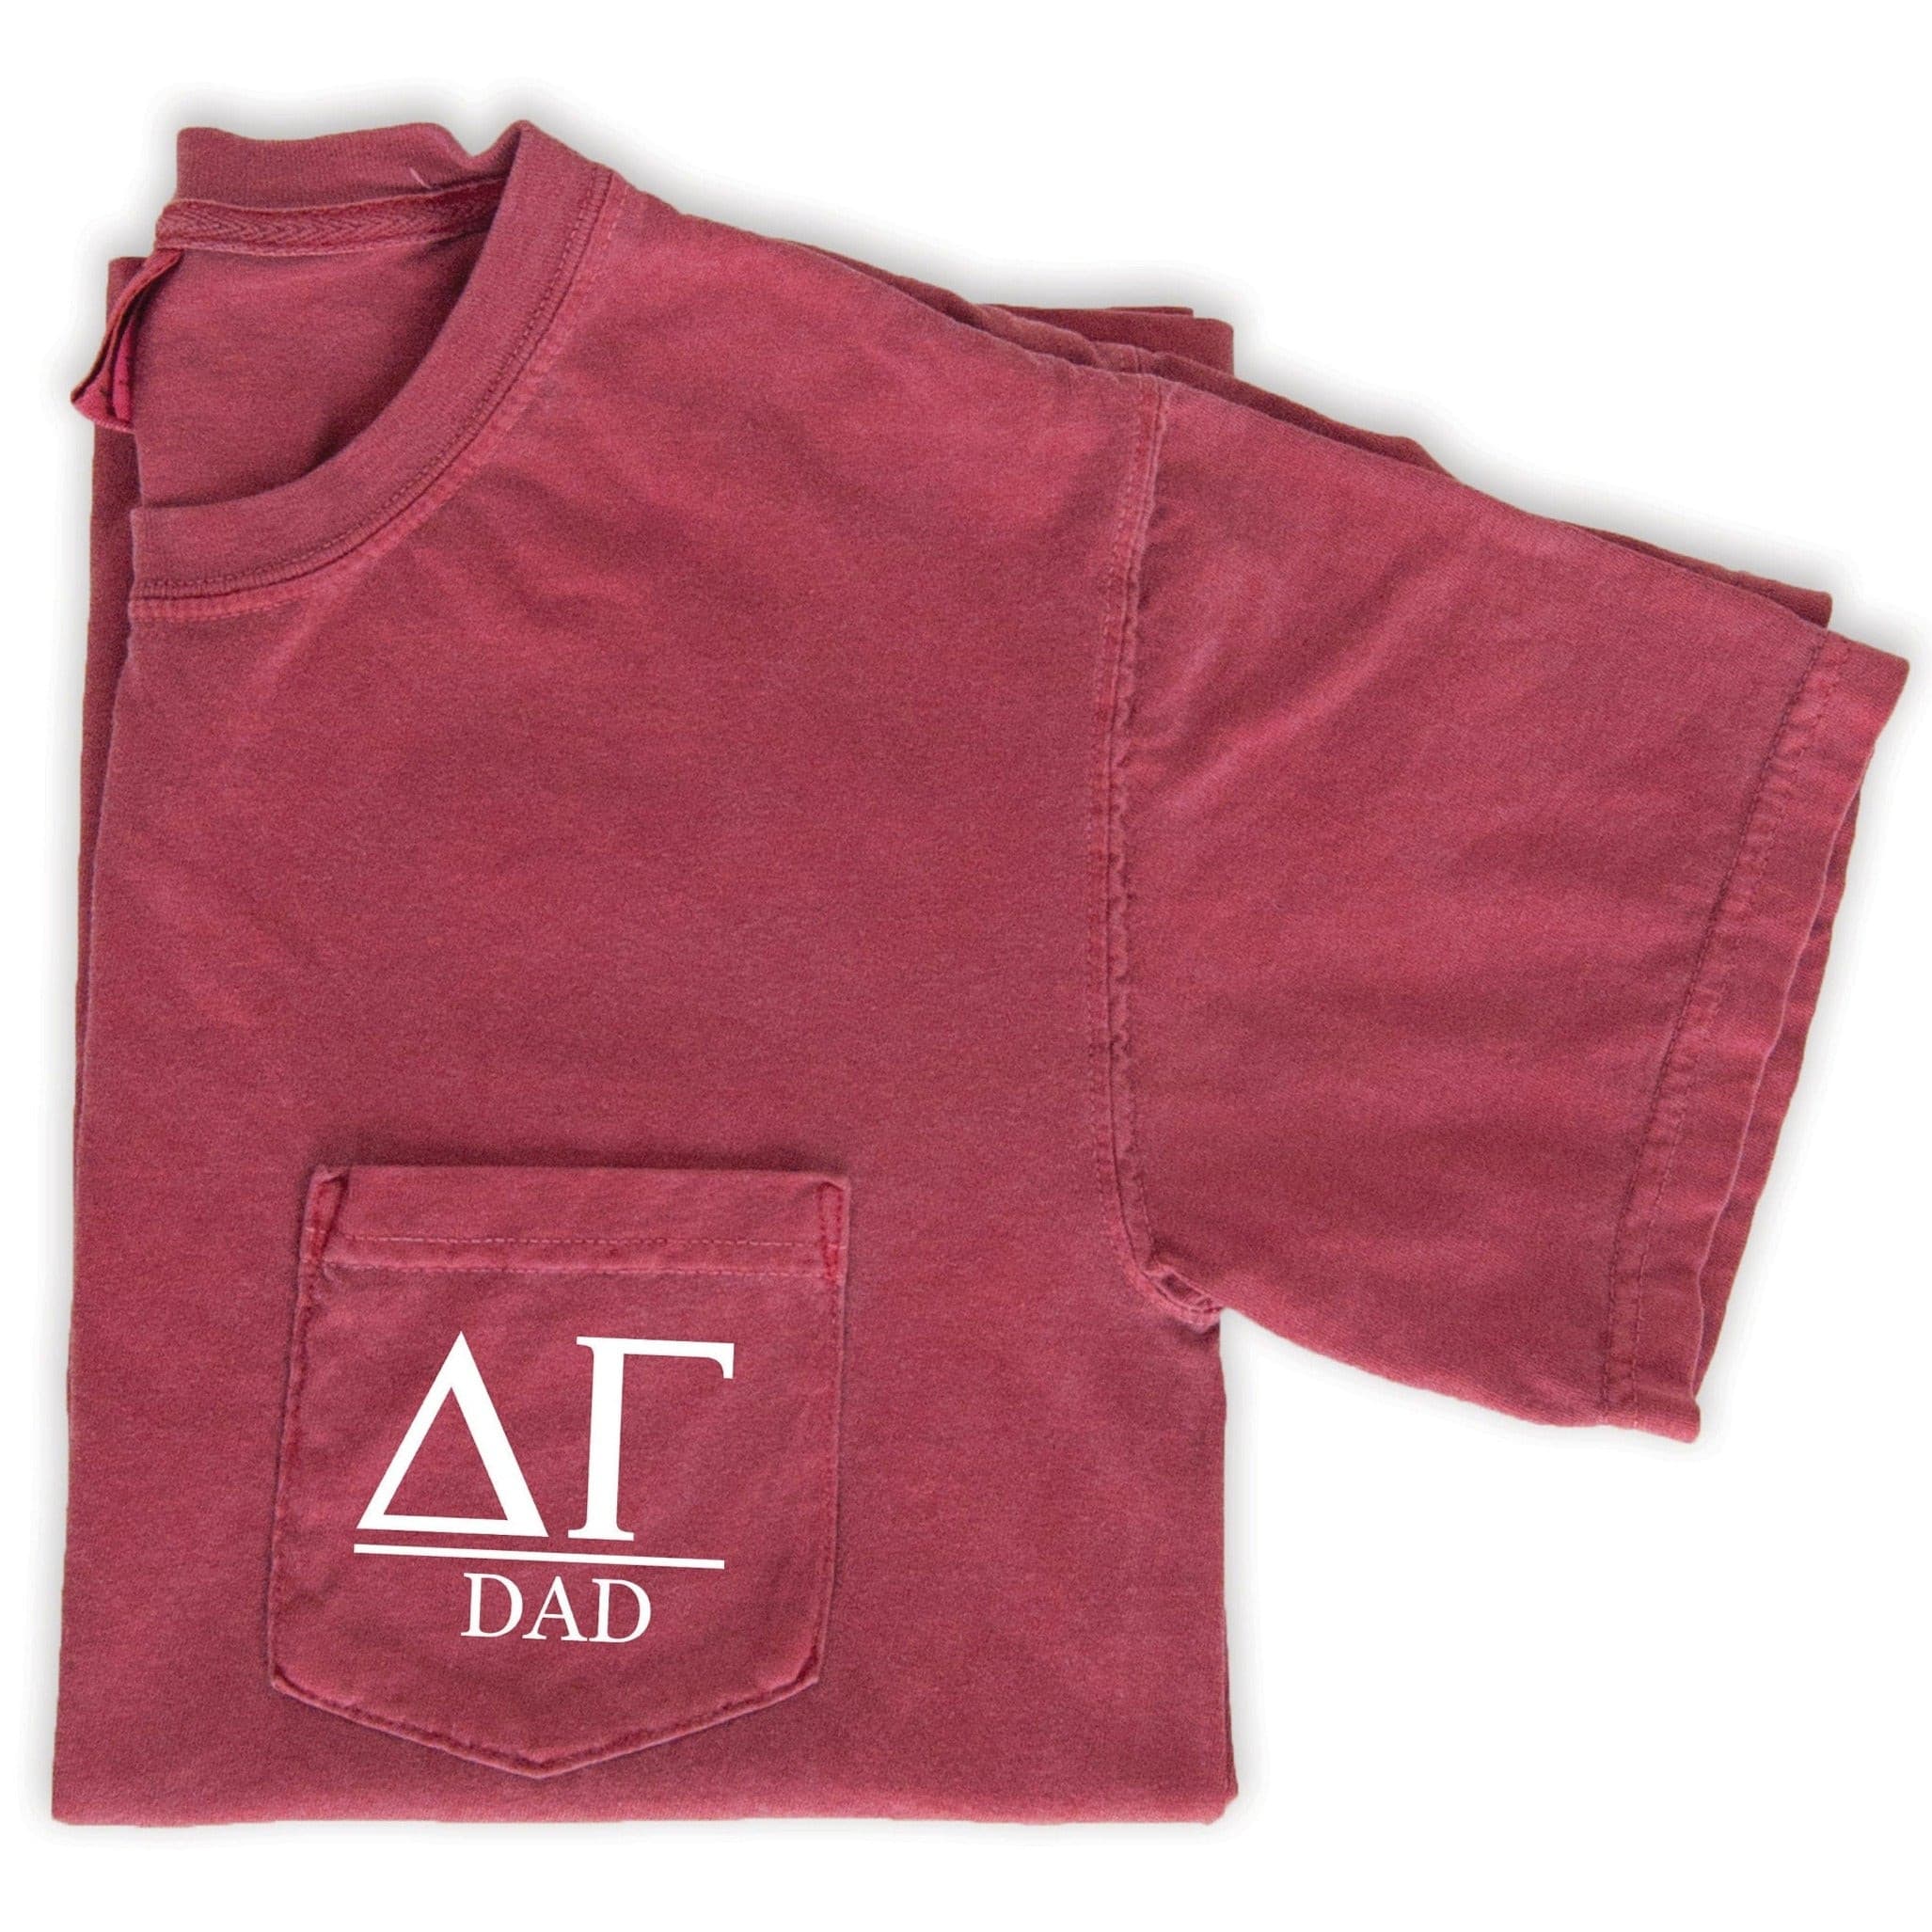 Delta Gamma Dad T-Shirt - Crimson - Go Greek Chic